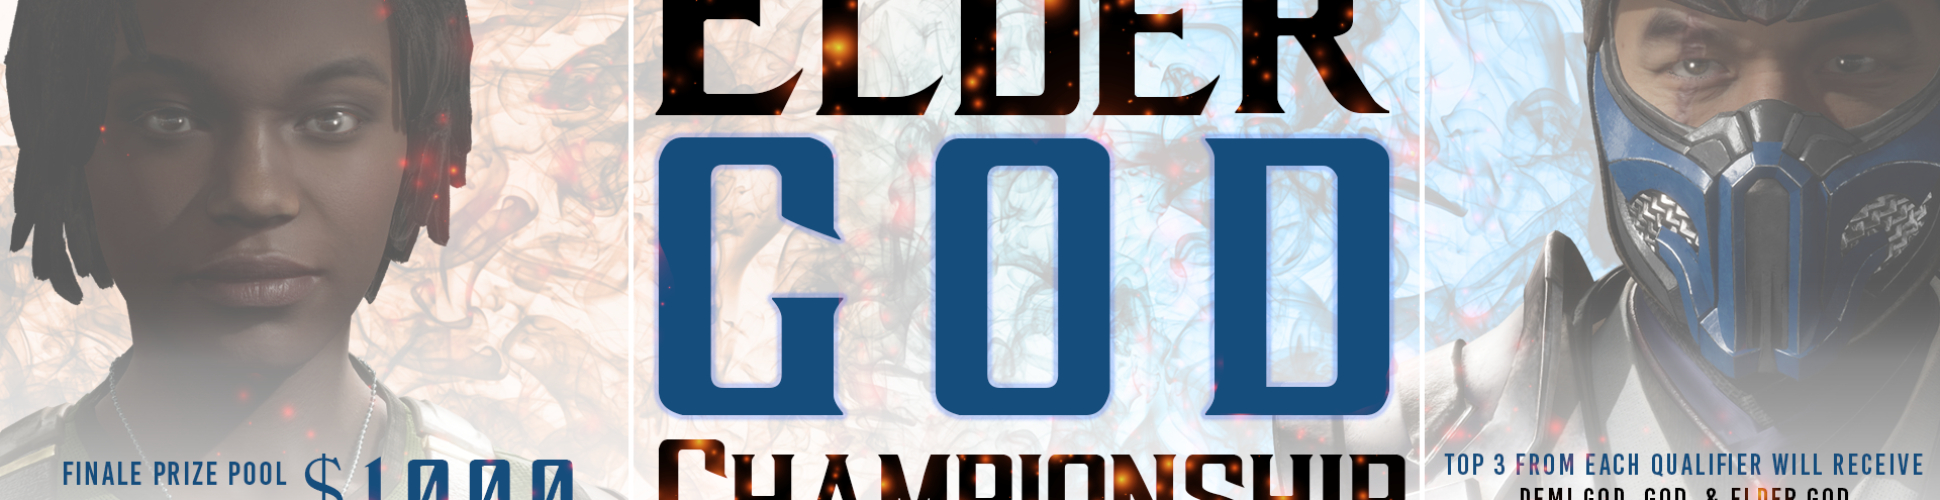 Elder God Championship: Scorpion Qualifier